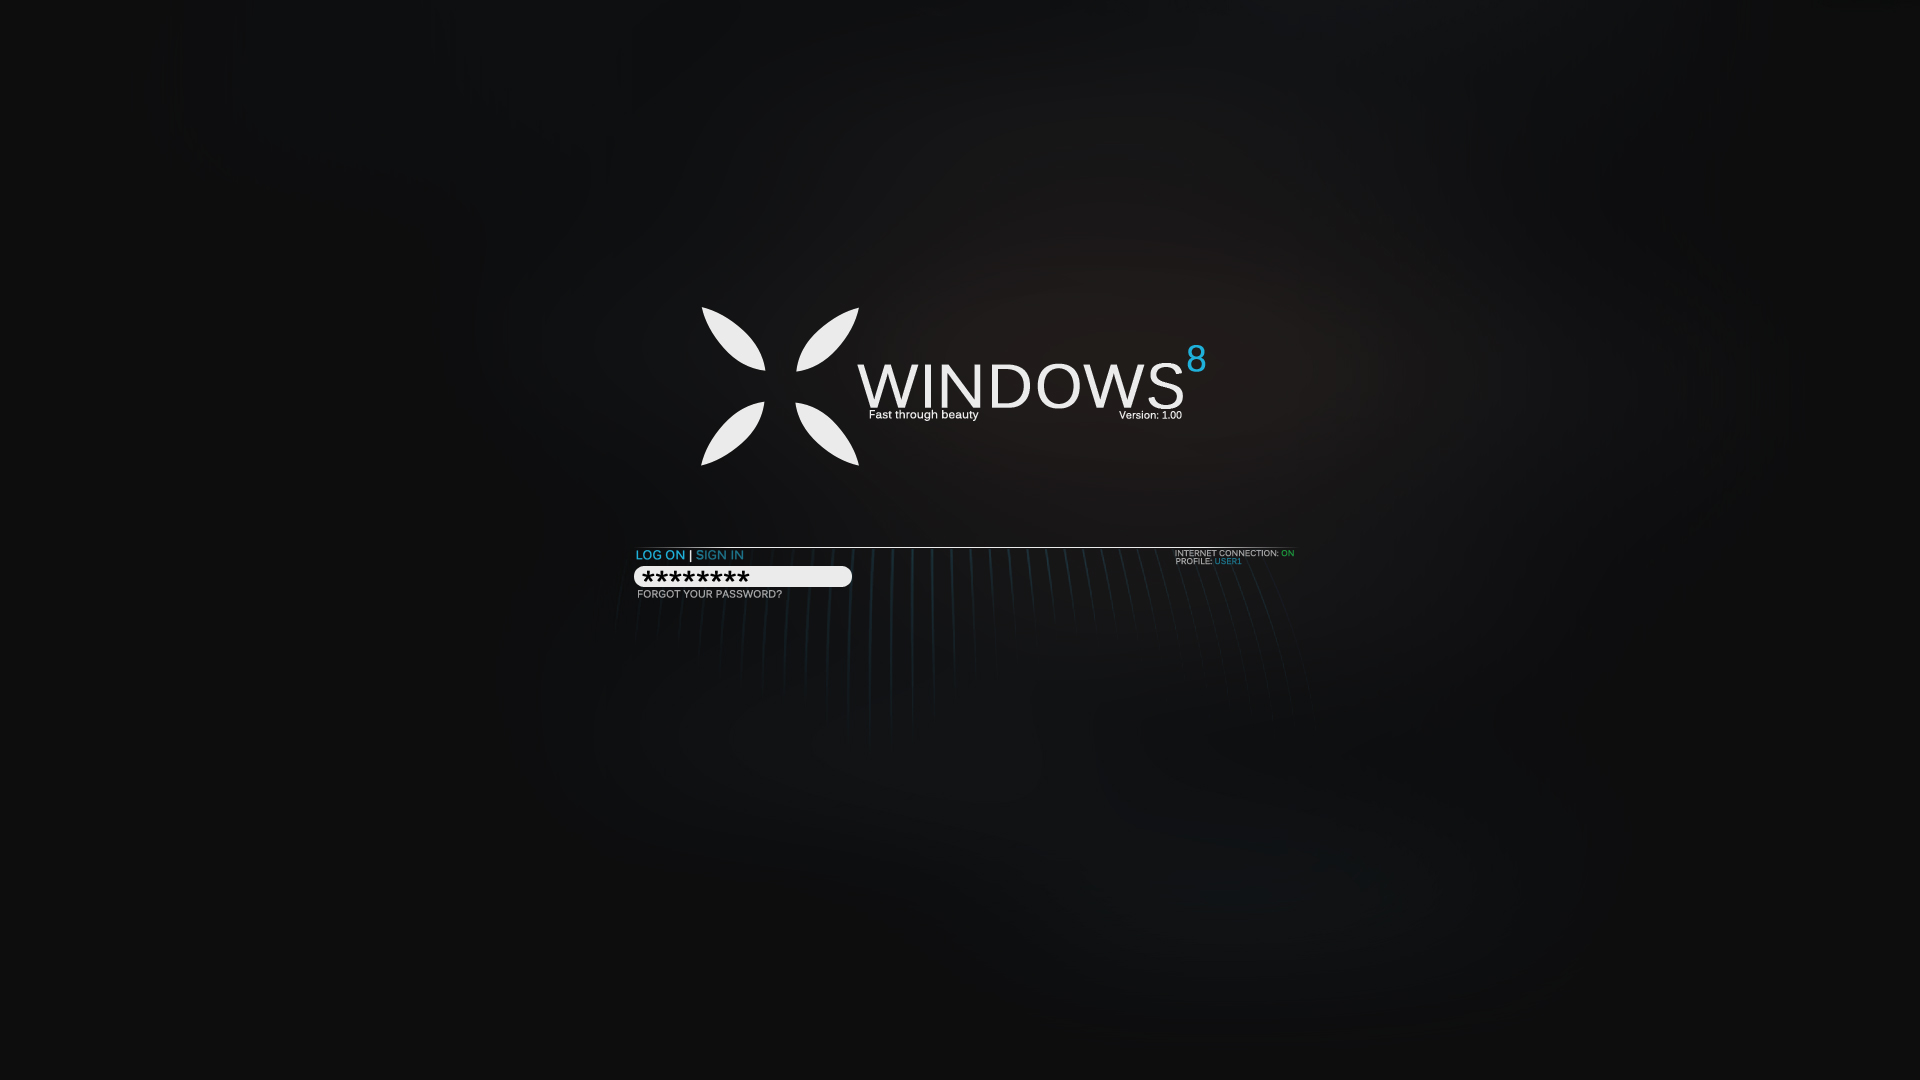 Скачать обои бесплатно Окна, Технологии, Windows 8 картинка на рабочий стол ПК